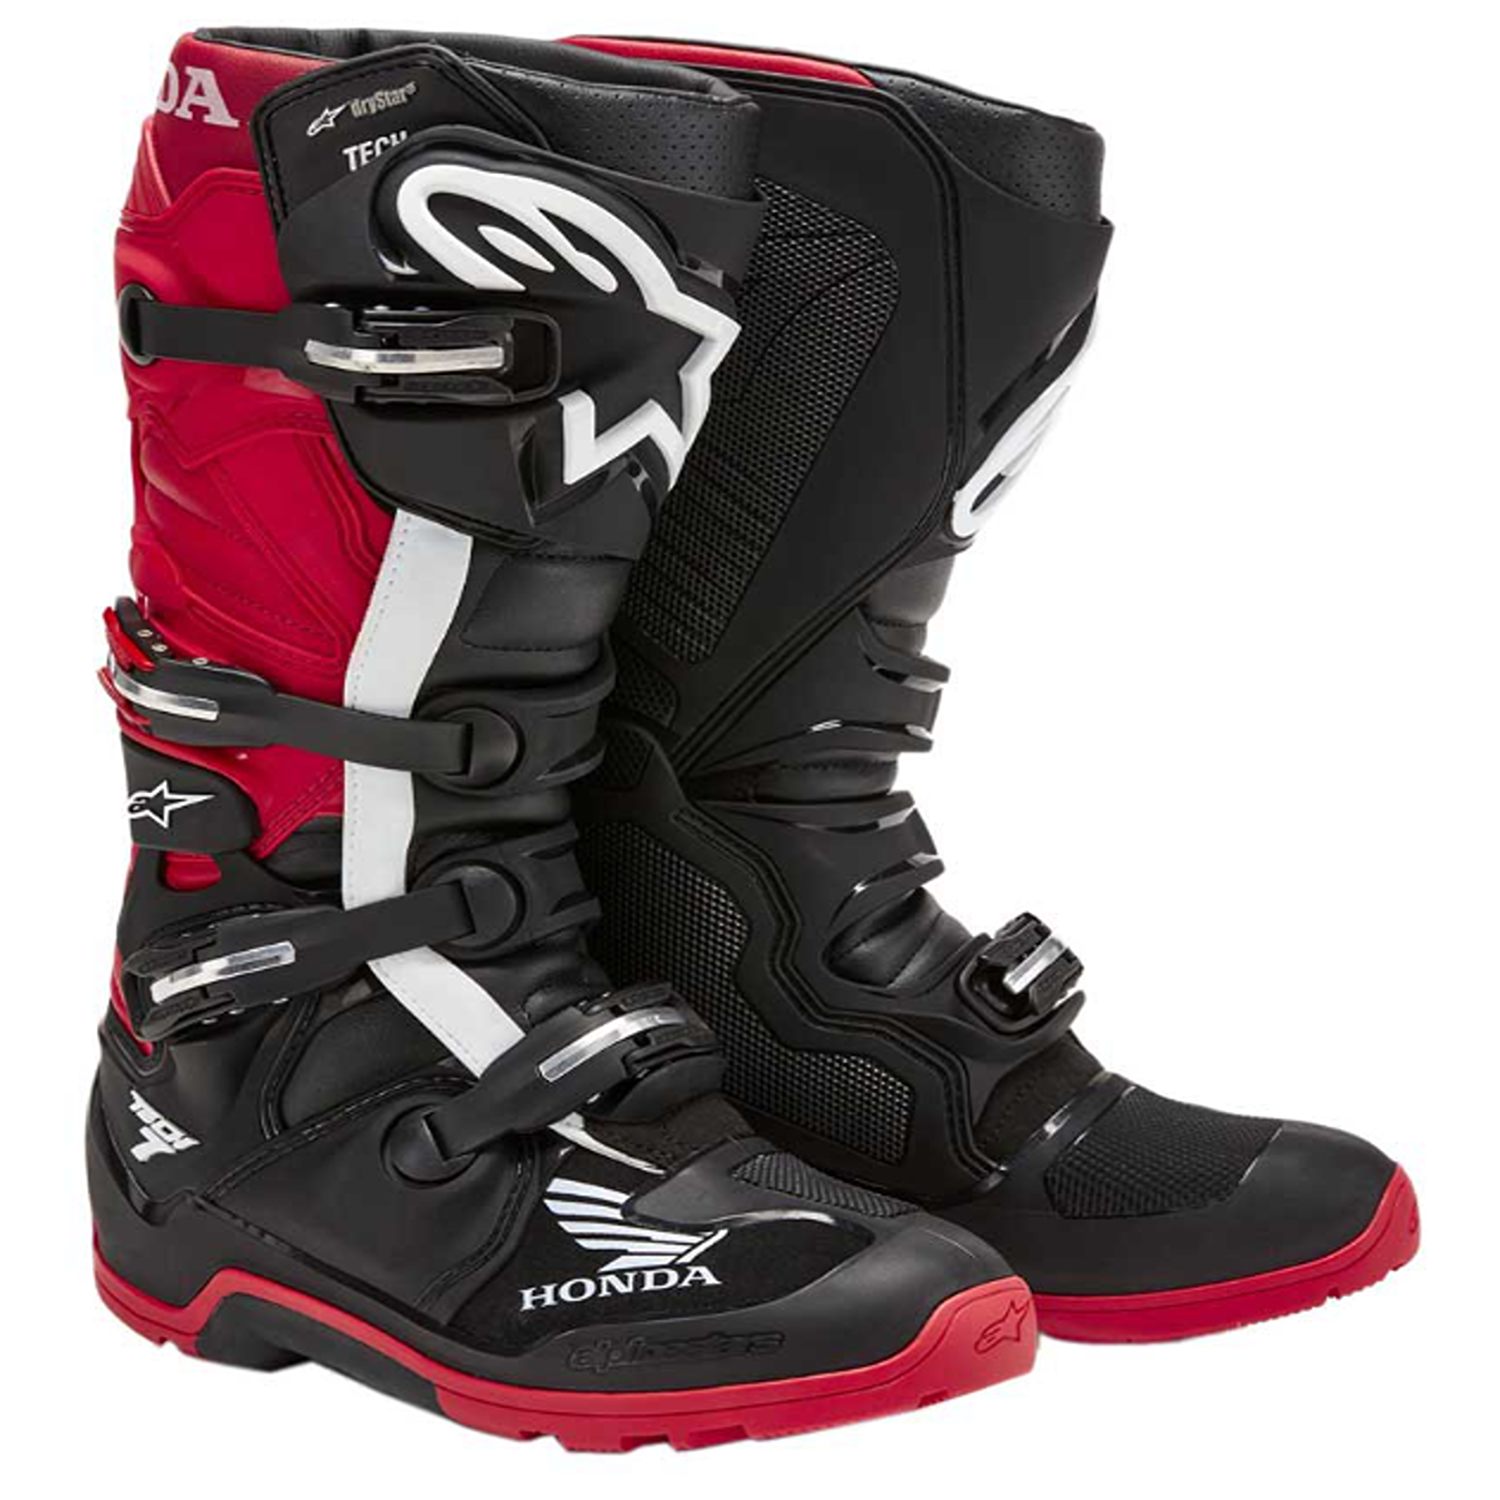 Image of Alpinestars Honda Tech 7 Enduro Drystar Boots Black Bright Red Talla US 7